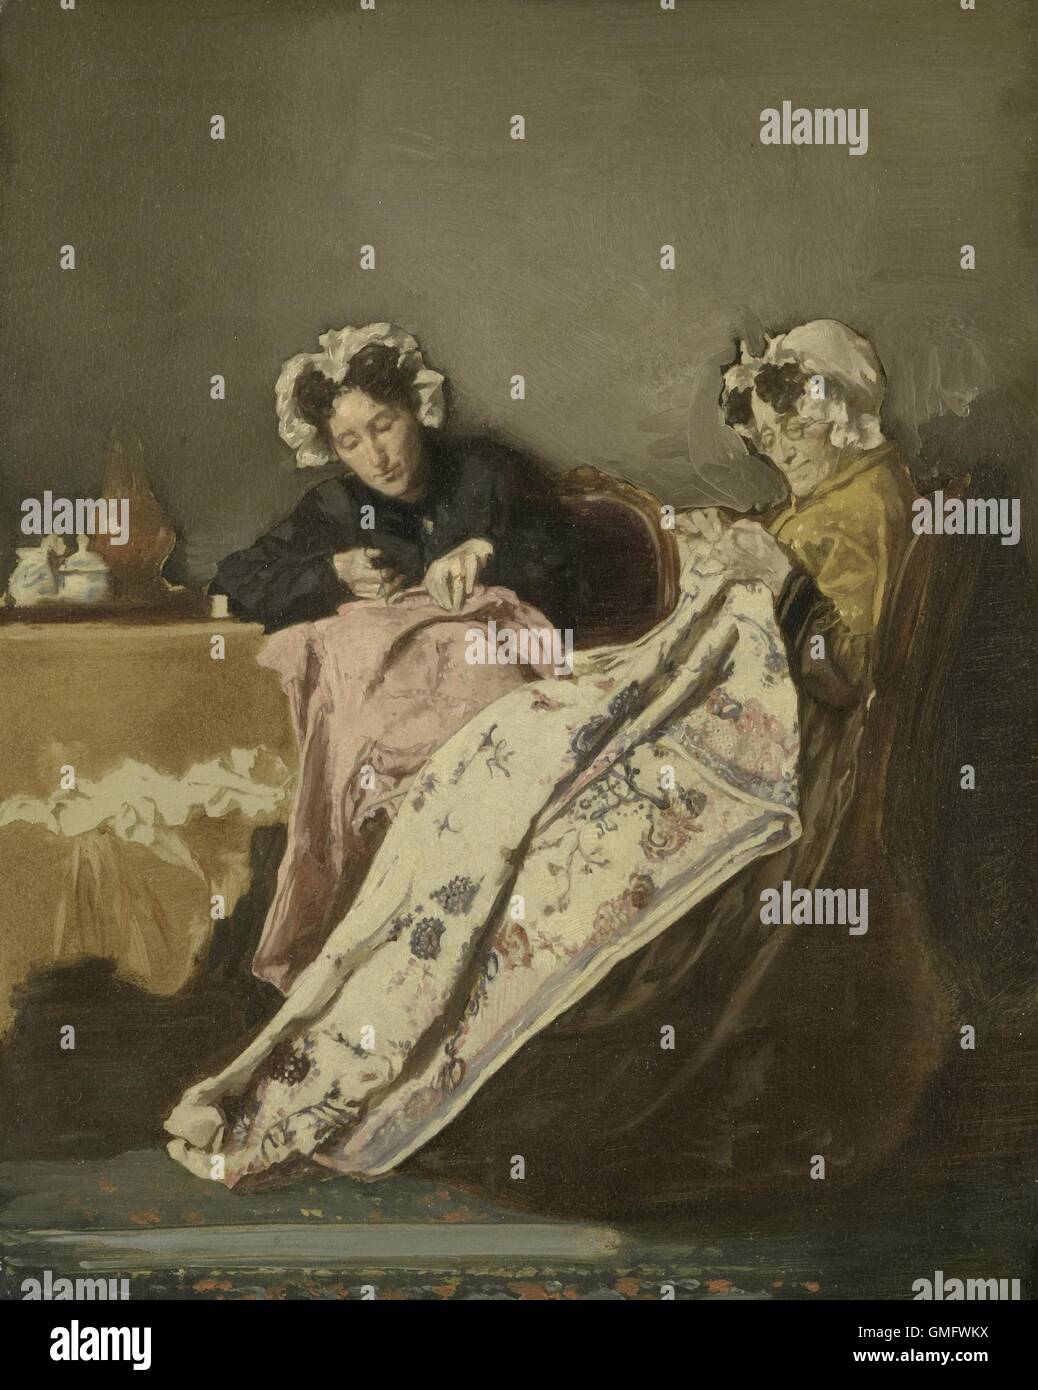 Deux dames à leur Couture, Alexander Hugo Bakker Korff, ch. La peinture hollandaise, 1860-82, huile sur panneau. (BSLOC 2016 1 39) Banque D'Images